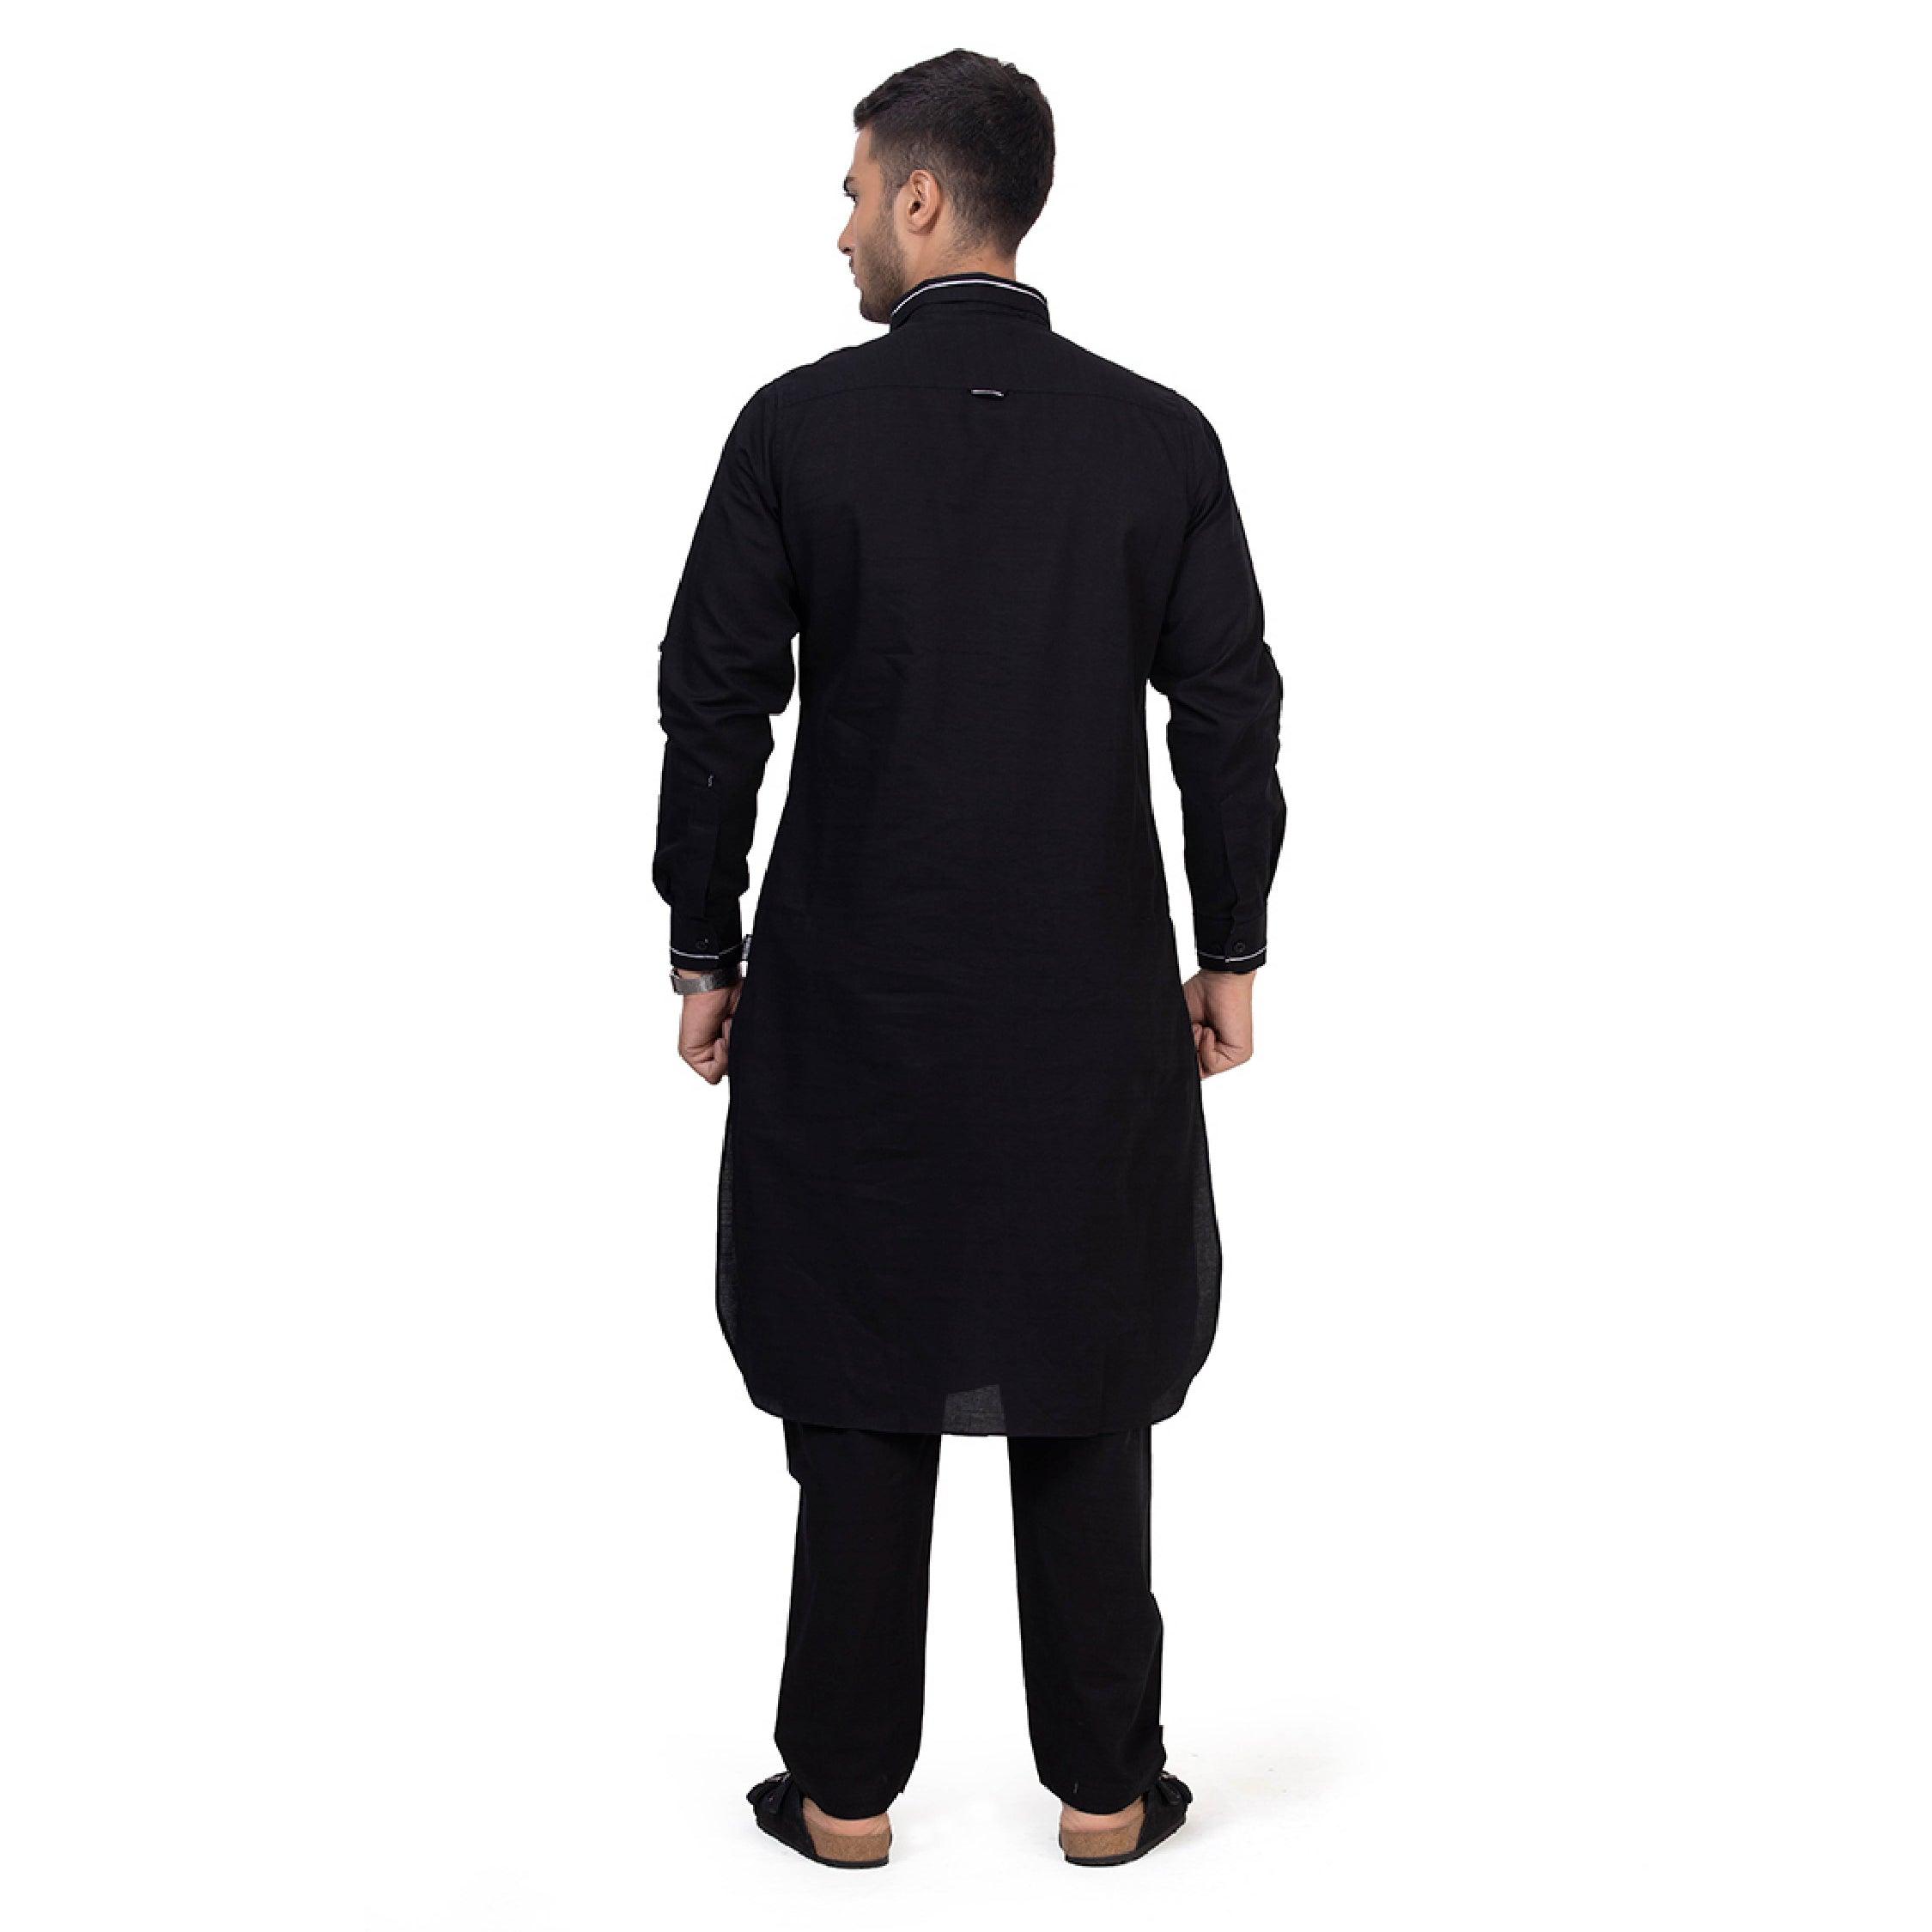 Black Riwaya Pathani Suit for Men